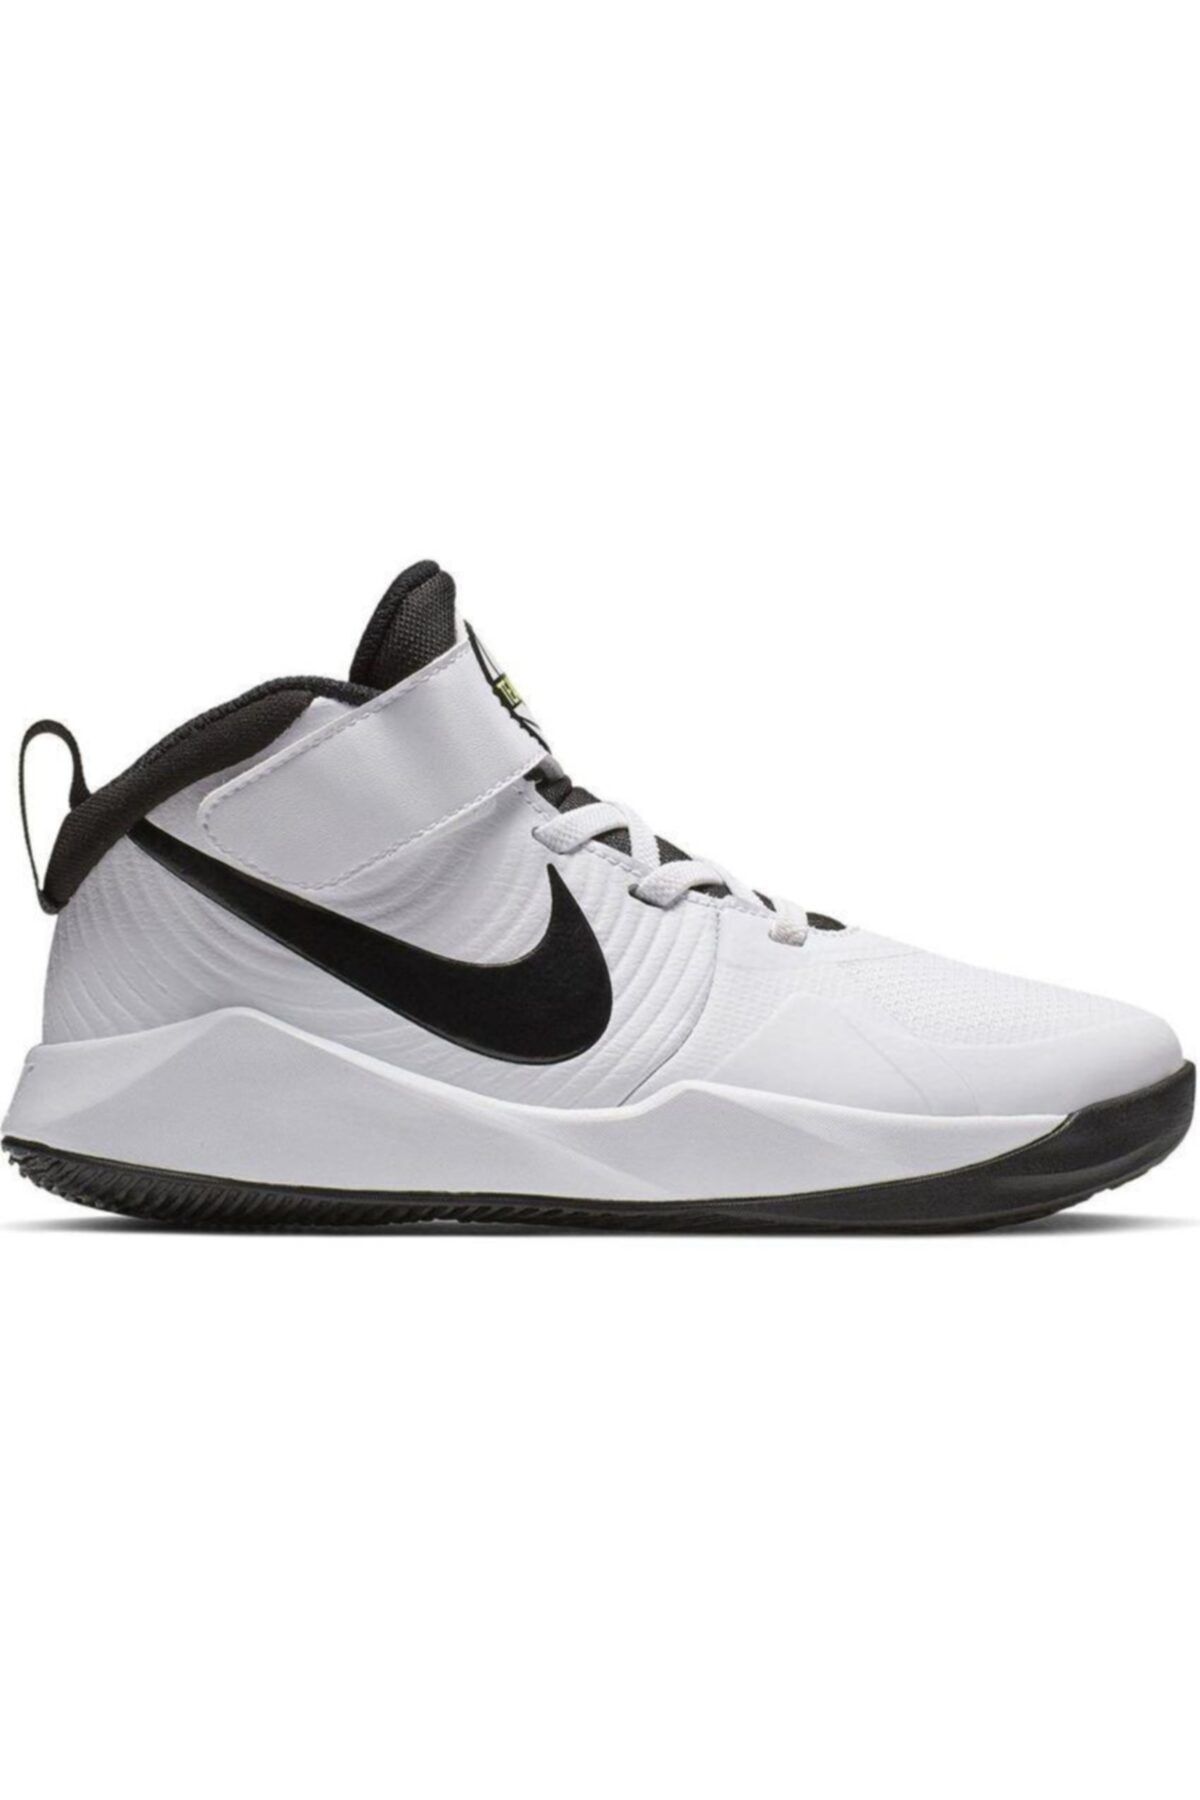 Nike Erkek Çocuk Beyaz Team Hustle D 9 Ps  Basketbol Ayakkabısı Aq4225-100 Sneaker